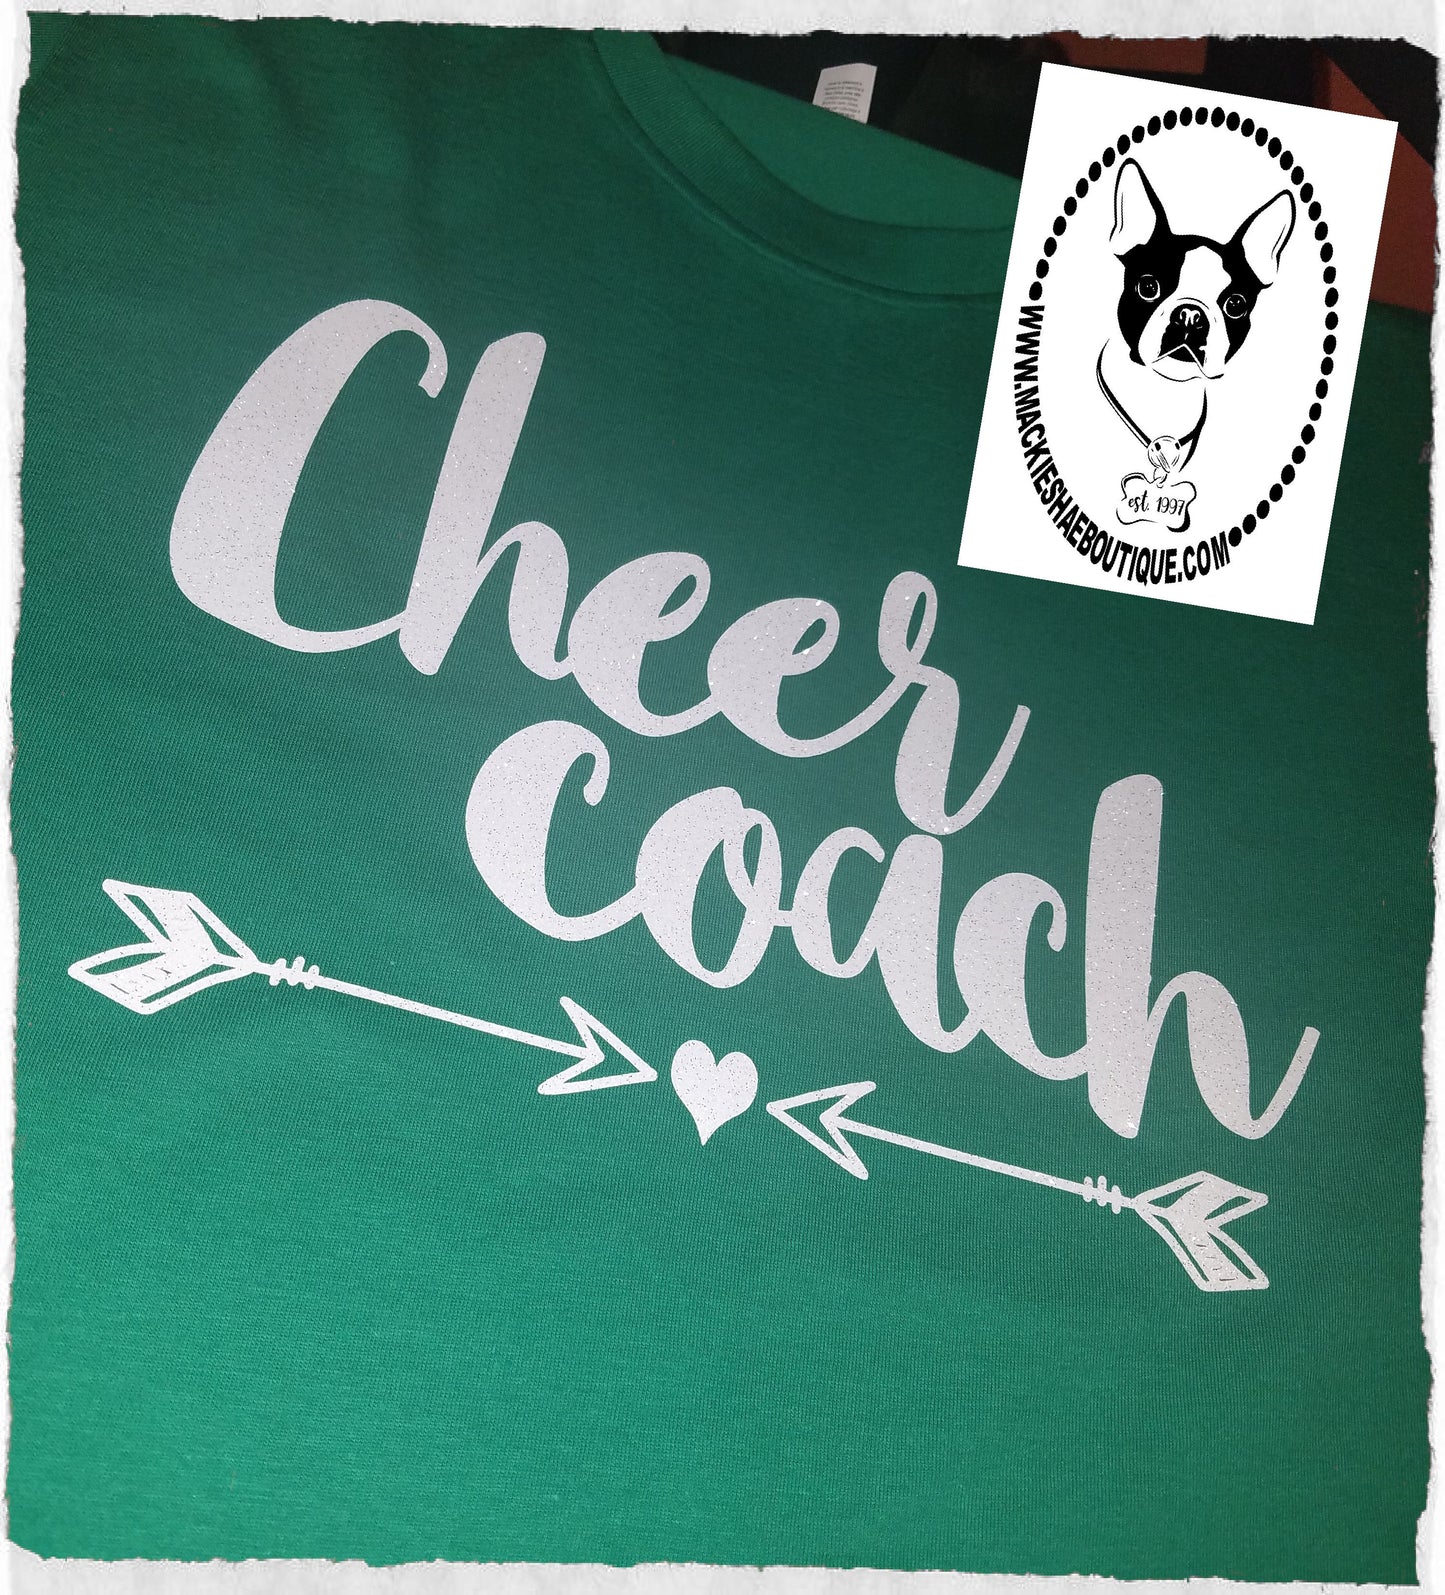 Cheer Coach with Arrows Custom Shirt, Short-Sleeve